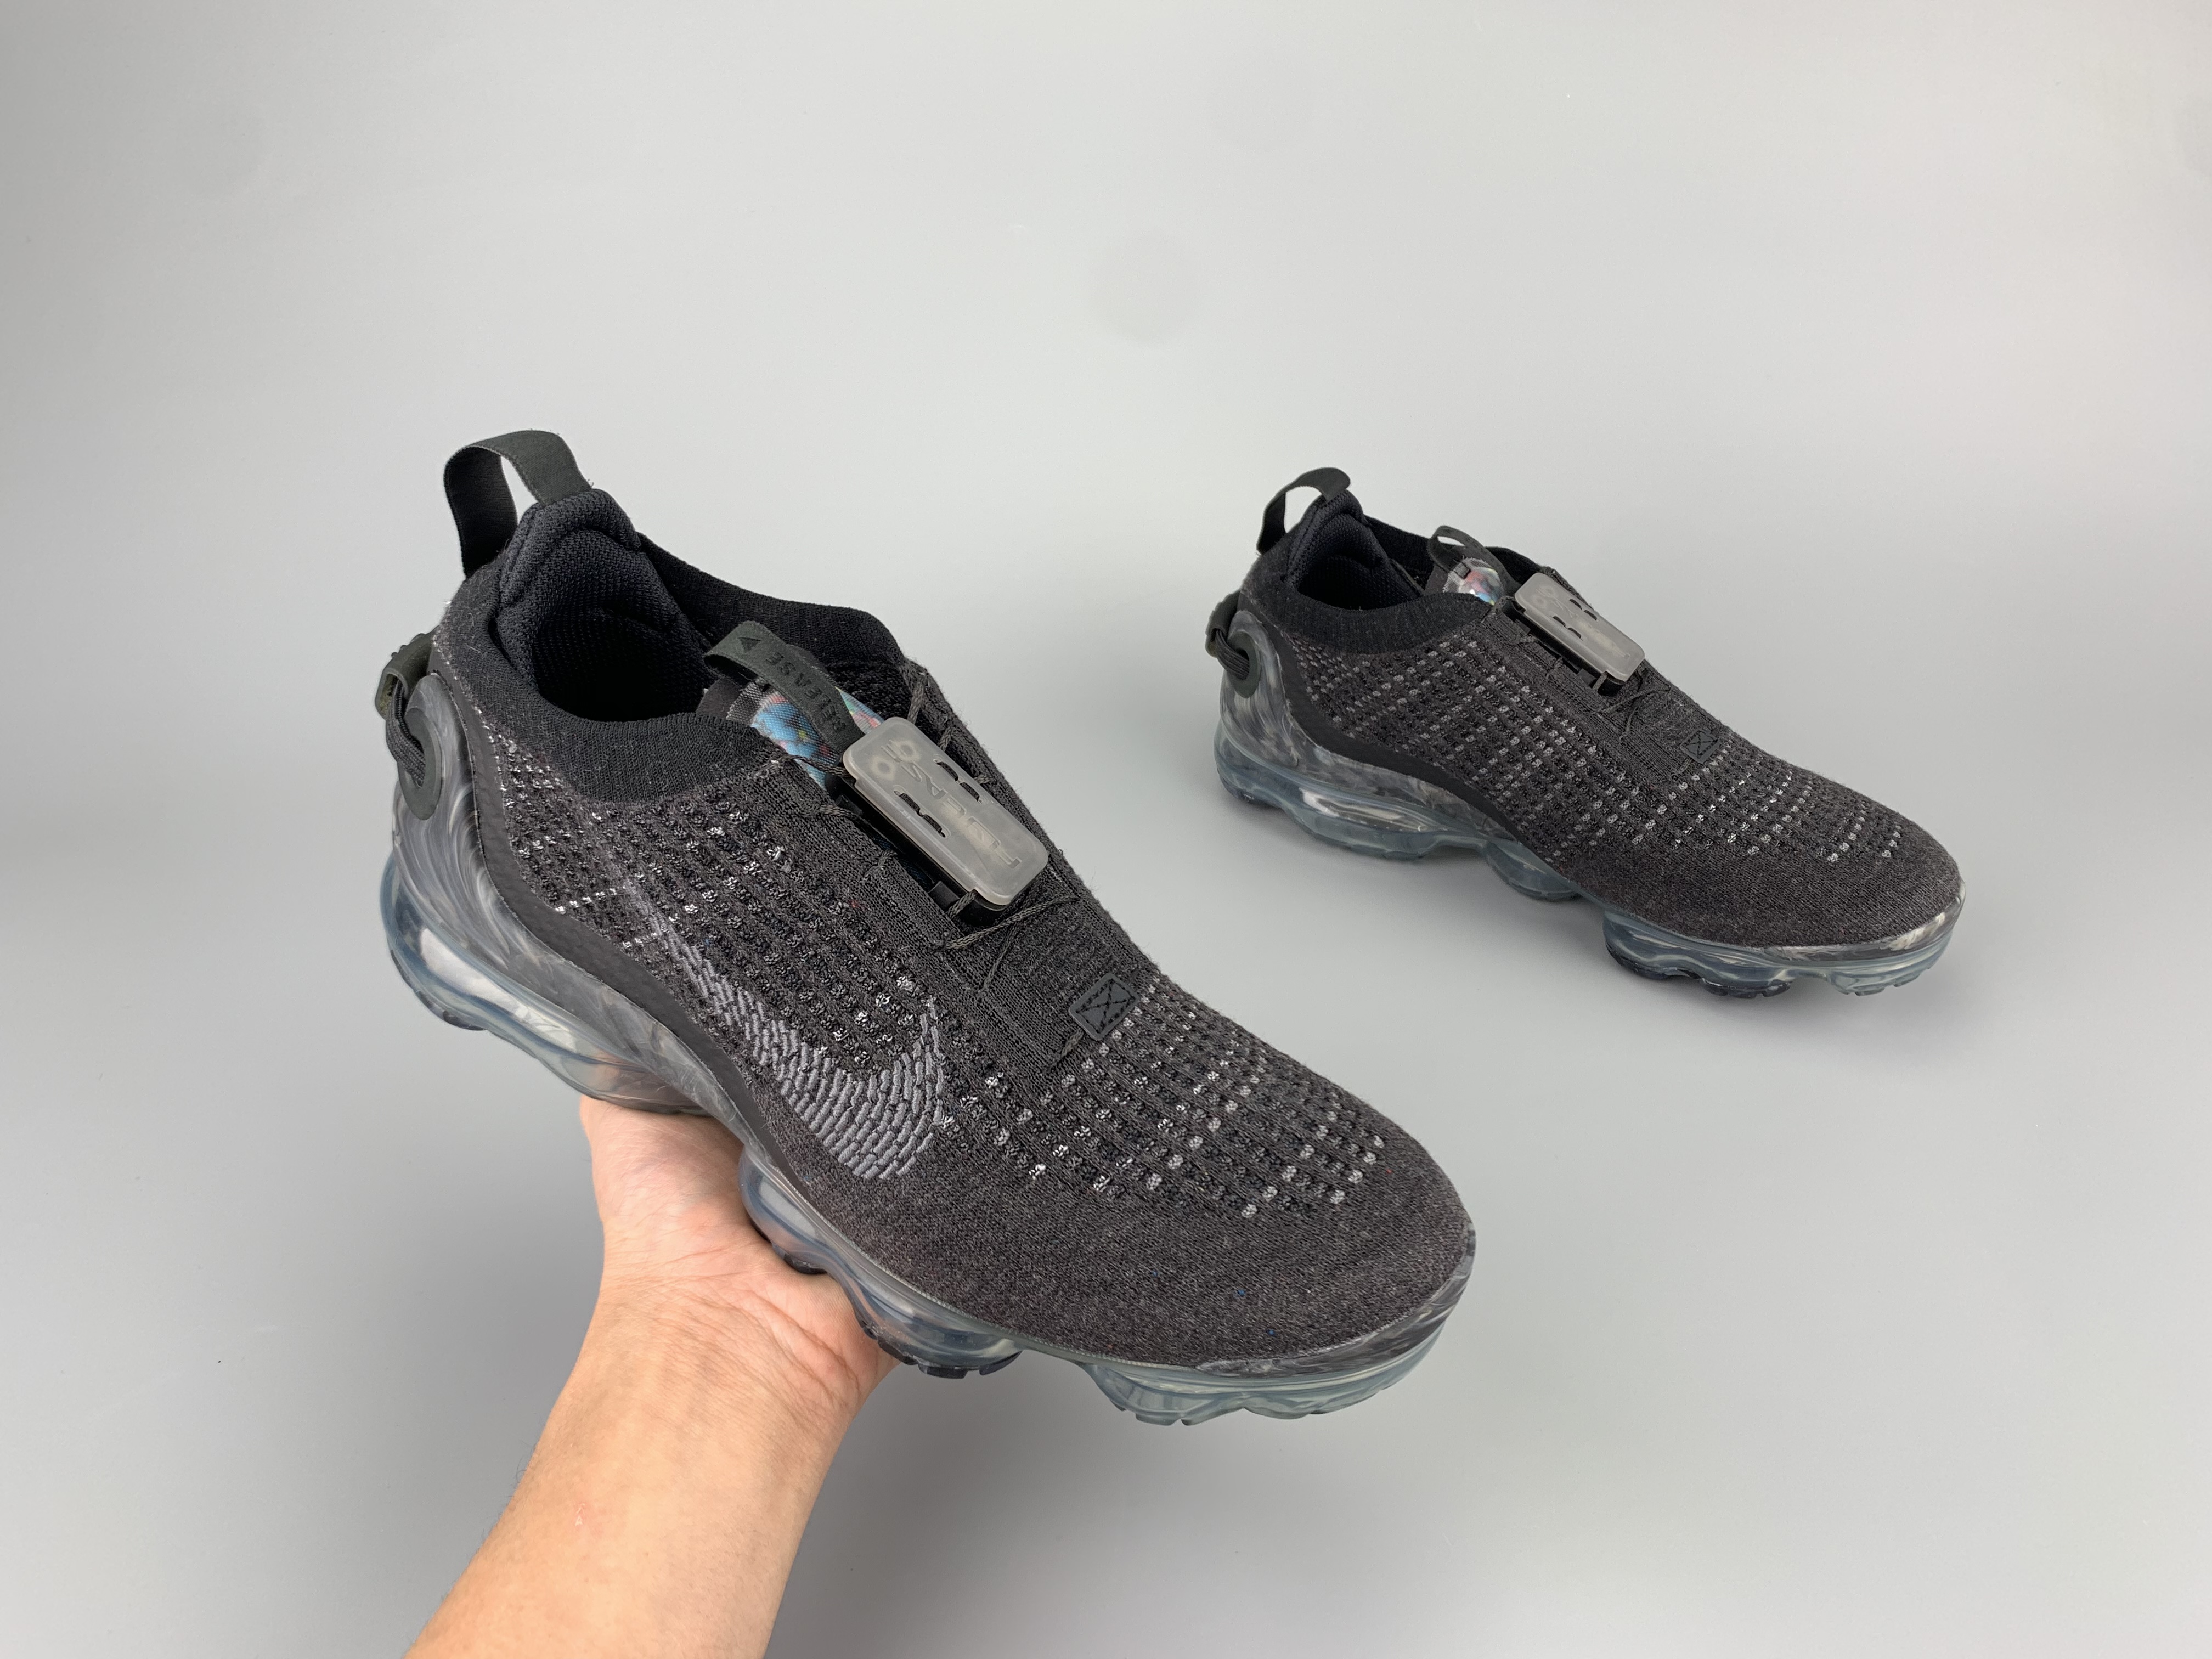 New Nike VaporMax 2020 Caron Grey Shoes For Women